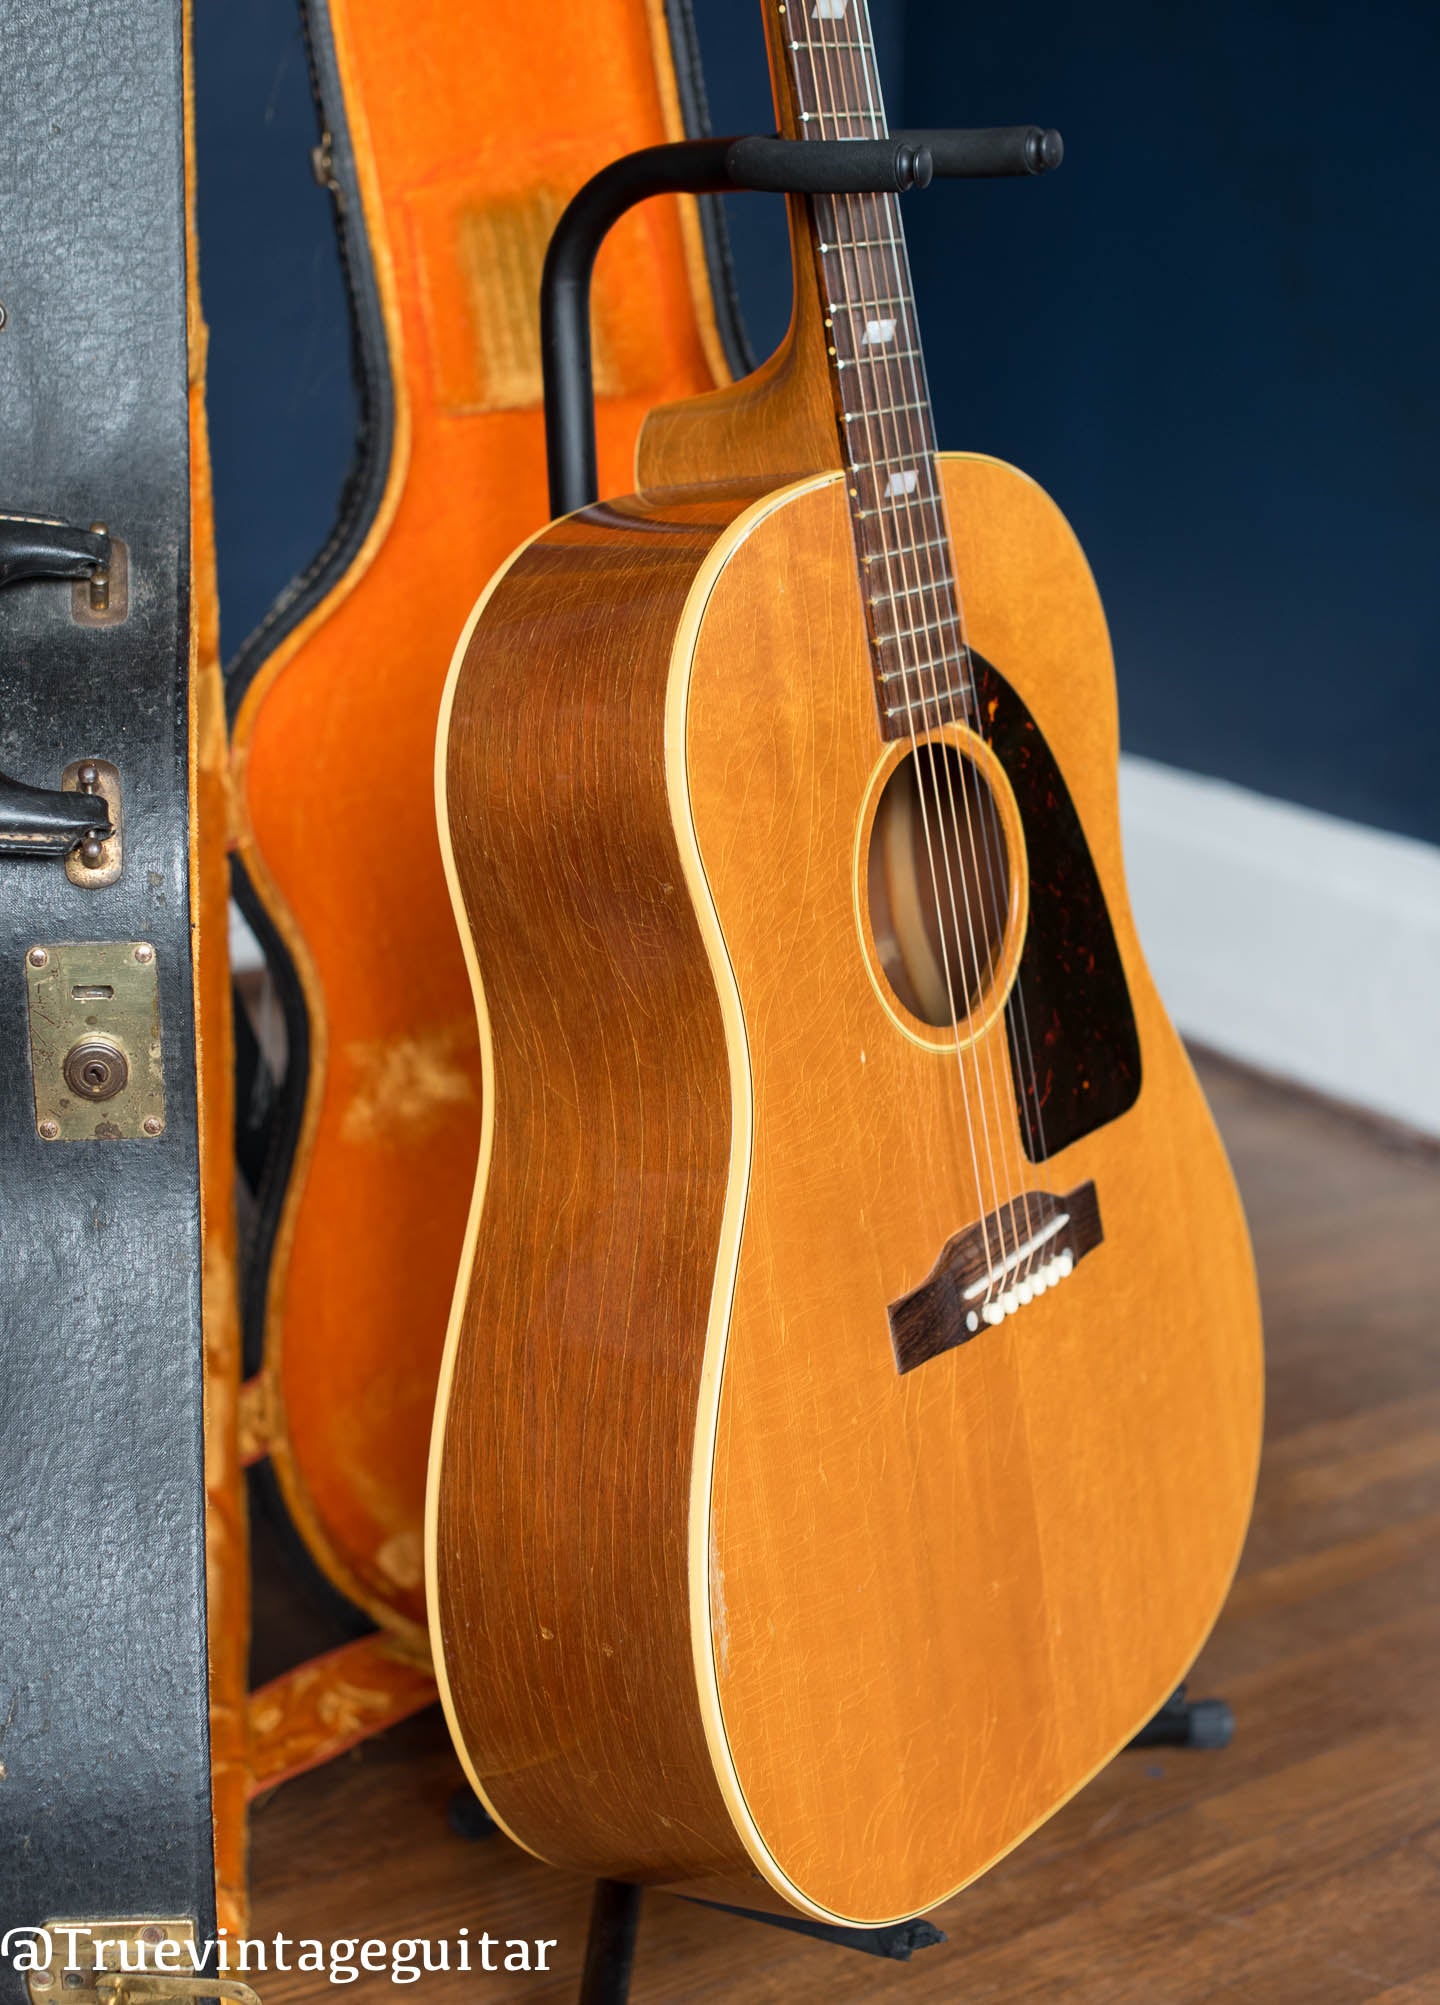 Vintage Epiphone acoustic guitar FT-79 Texan 1959